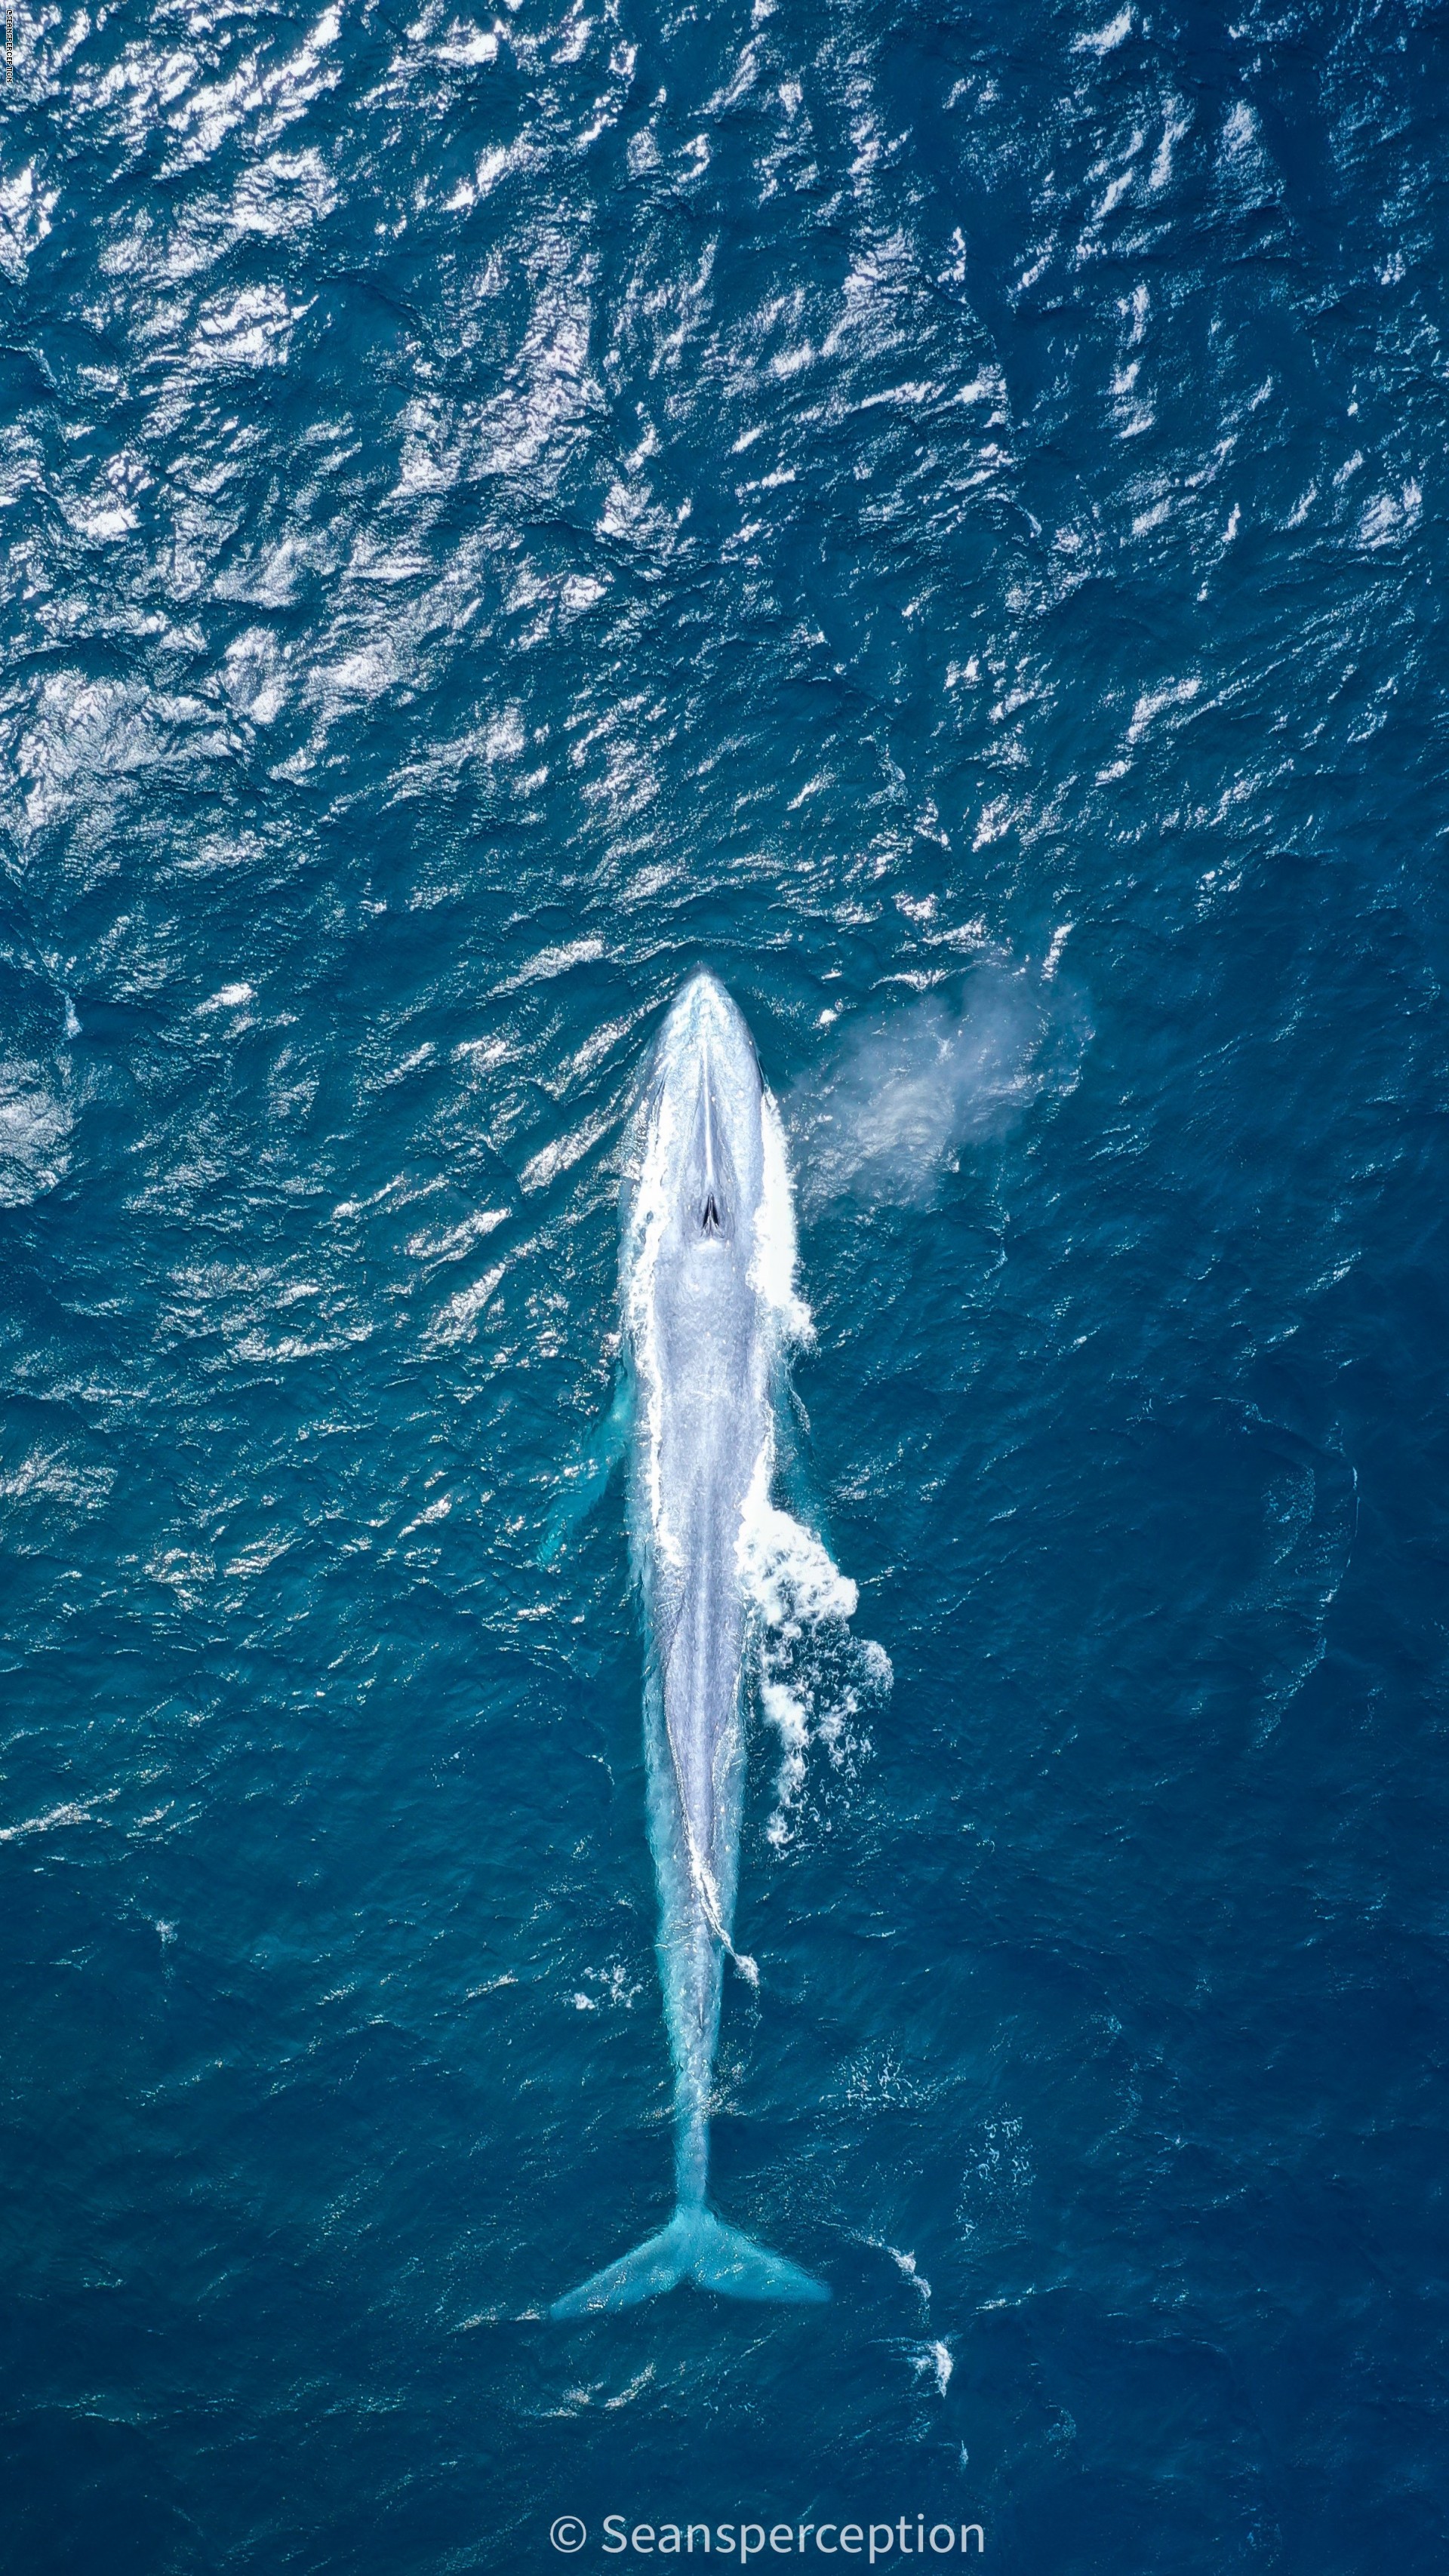 بعد ١٠٠عام .. الحوت الأزرق يظهر من جديد على سطح البح - صور